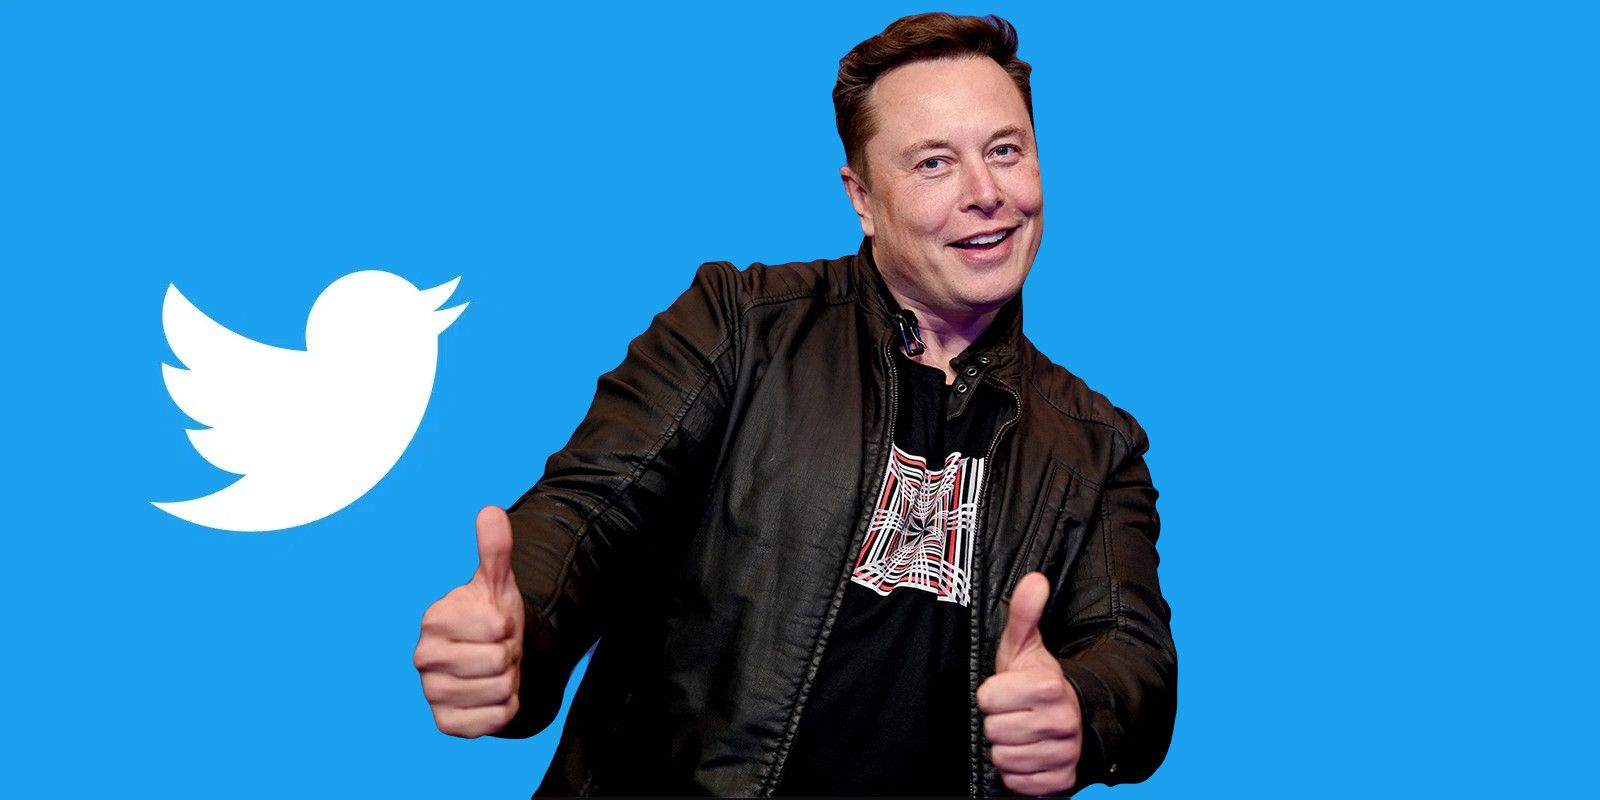 ¿Elon Musk compró Twitter?  Todo lo que sabemos sobre sus nuevas acciones en Twitter